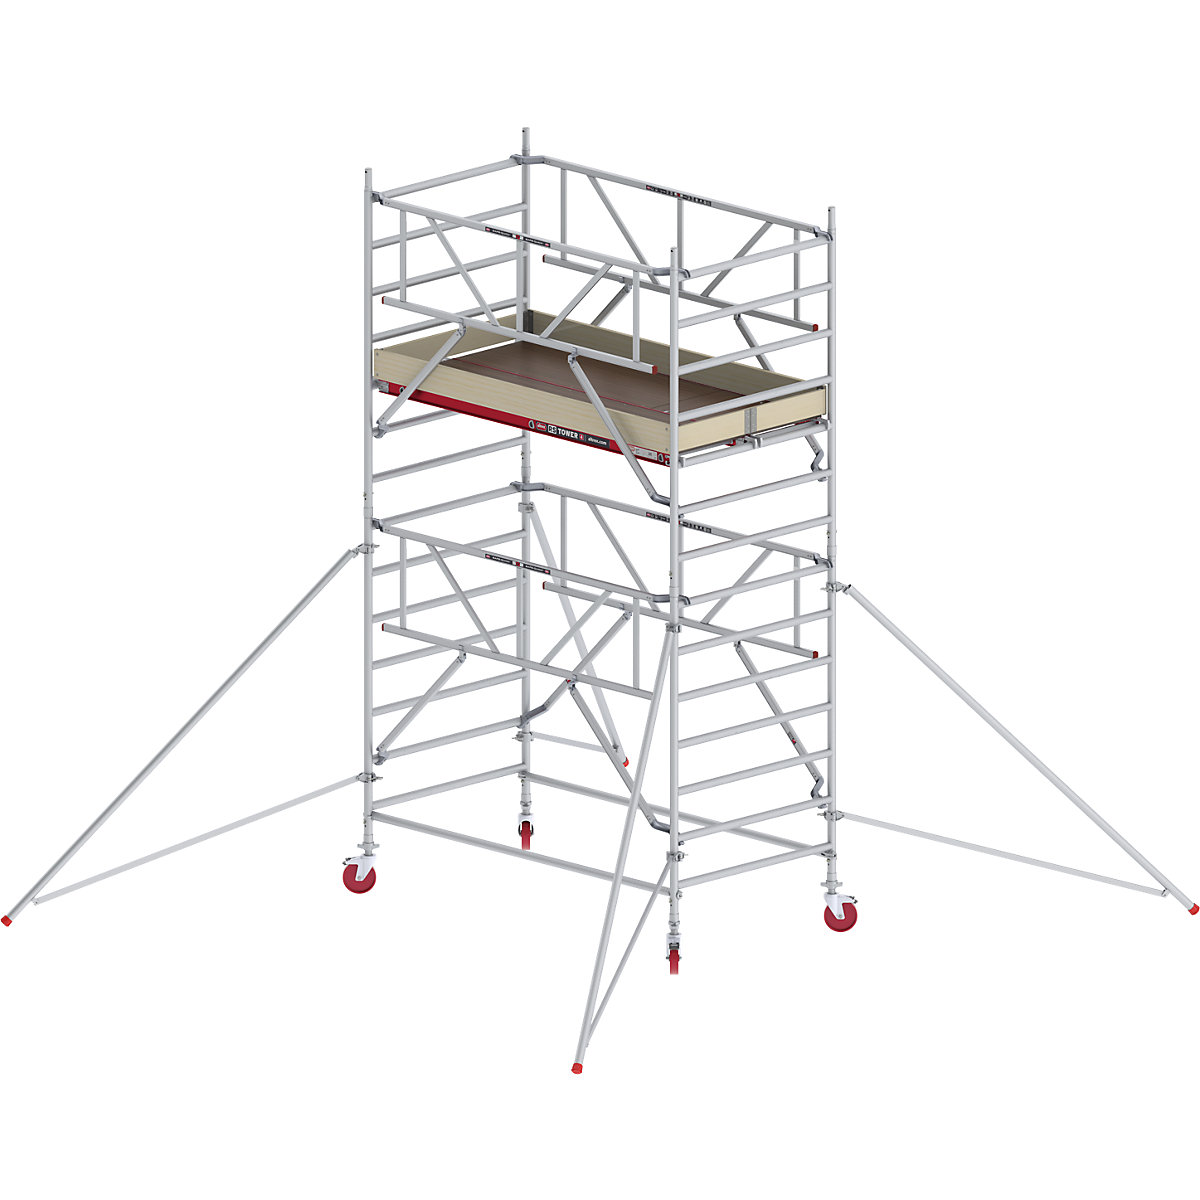 Trabattello mobile RS TOWER 42 largo con Safe-Quick® – Altrex, piattaforma in legno, lunghezza 2,45 m, altezza di lavoro 5,20 m-5